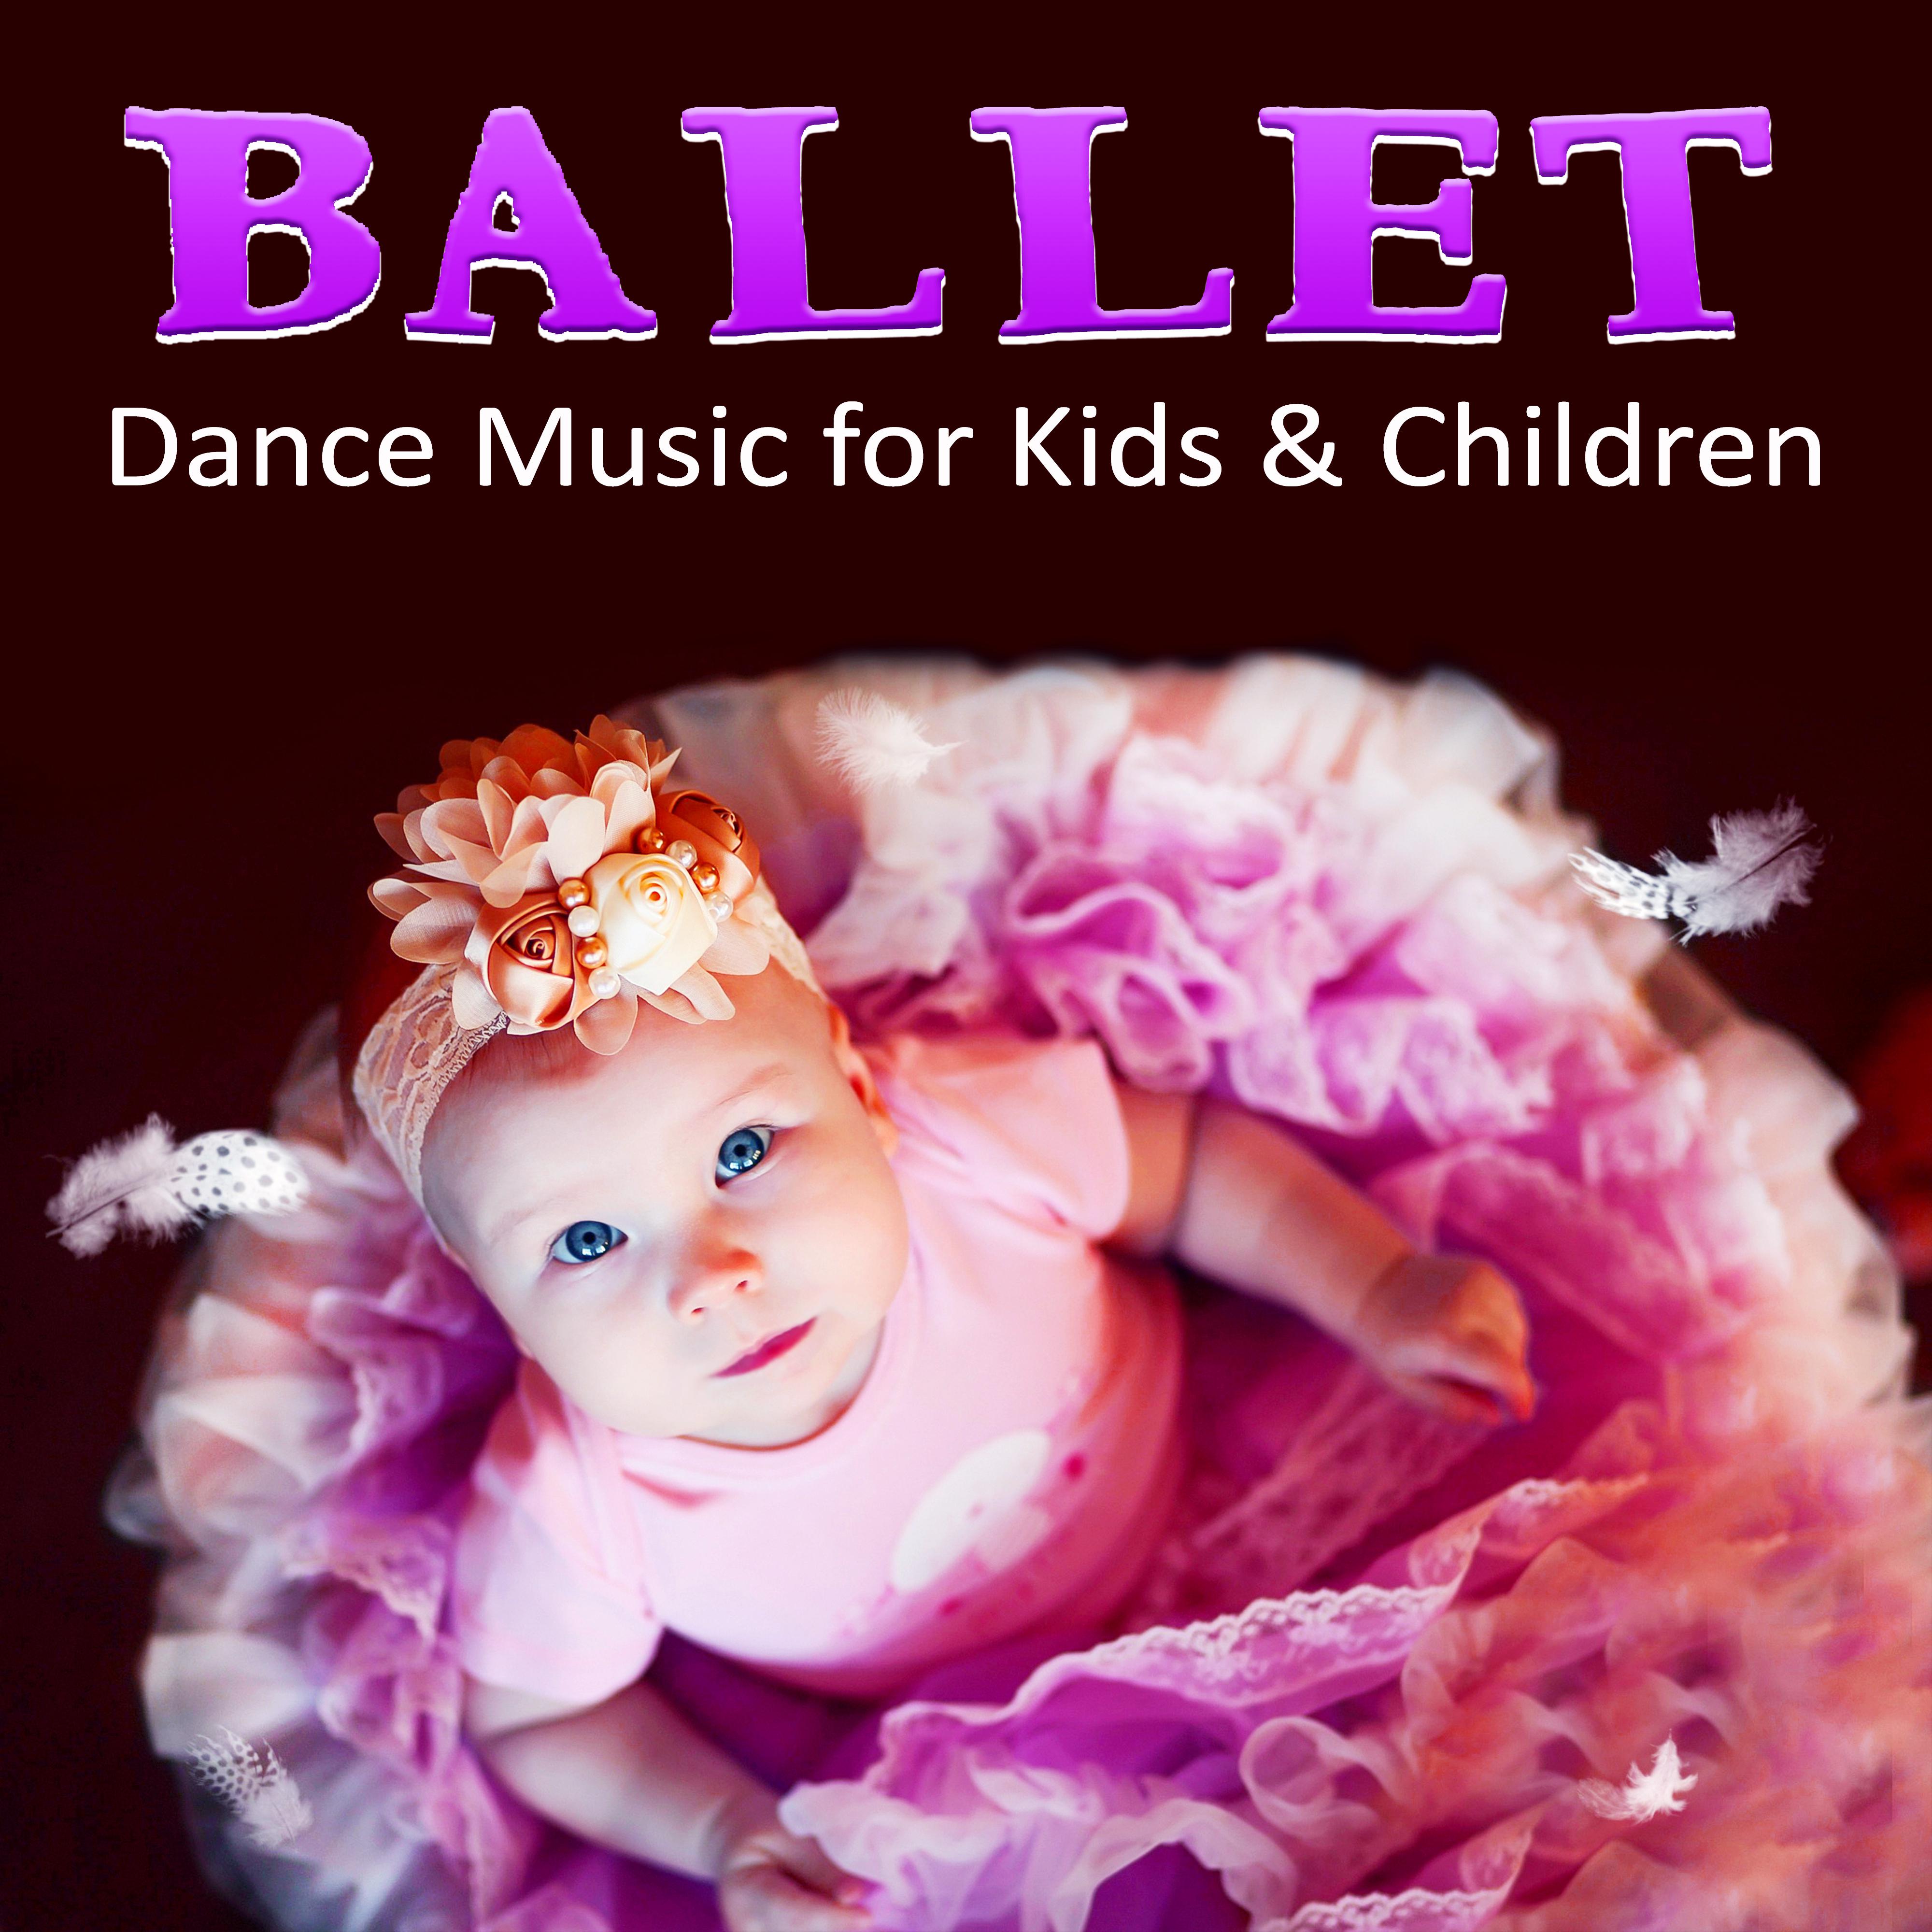 Ballet Dance Music for Kids & Children